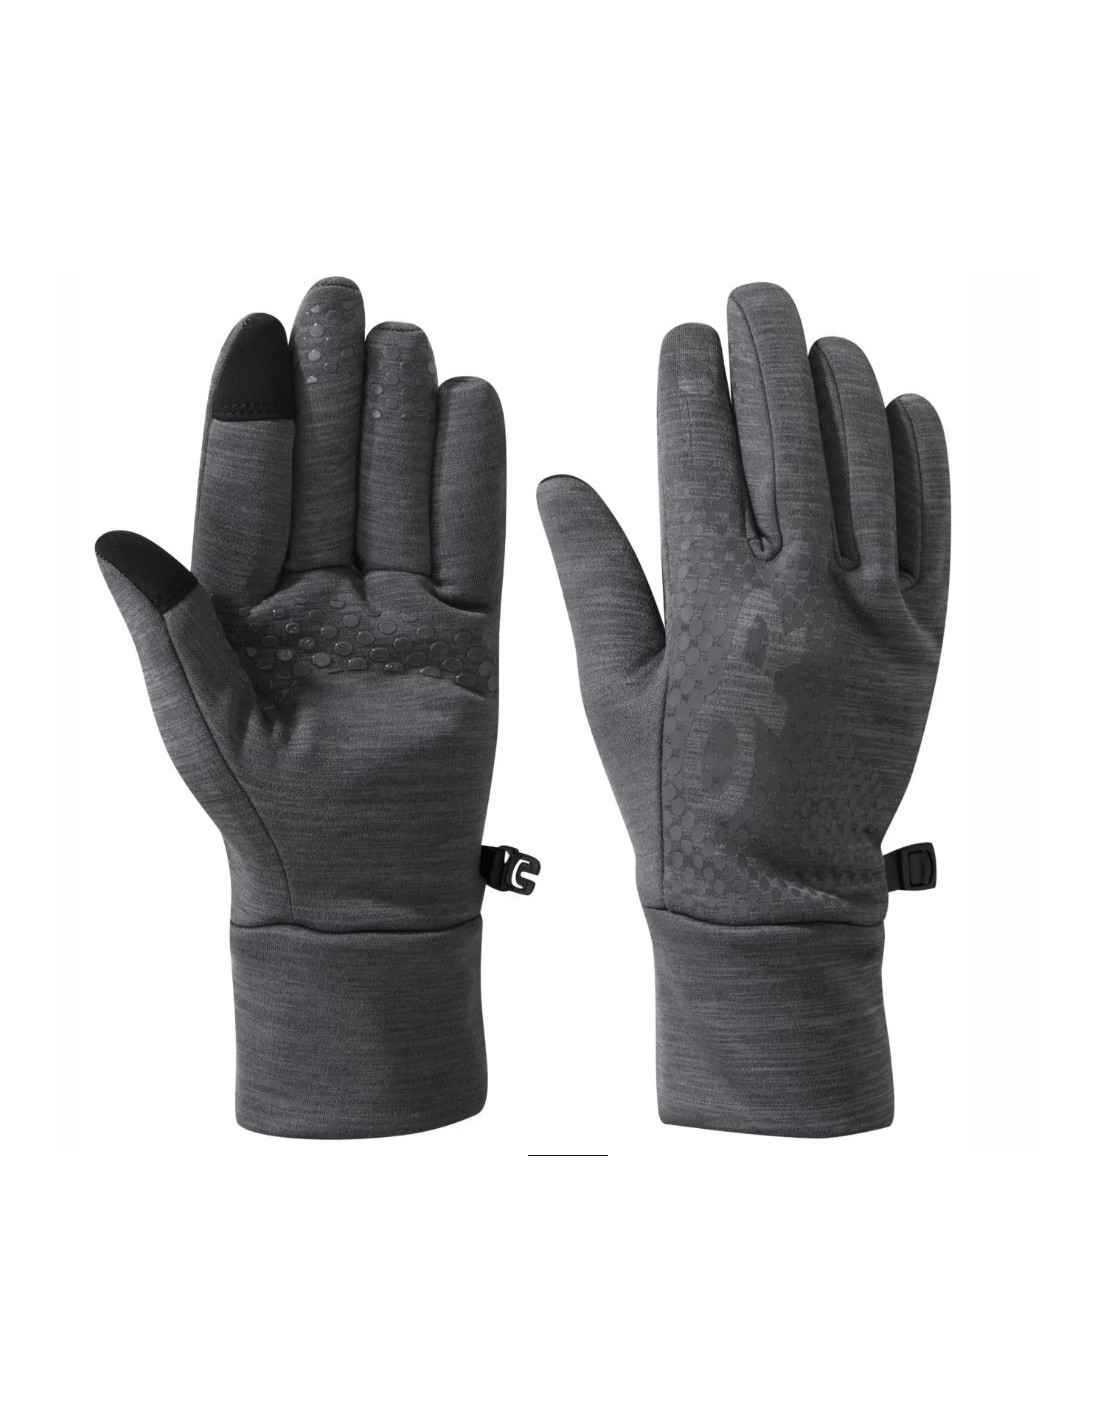 Super doux et ultra chauds, ces gants Femme Torsadés vous offrent